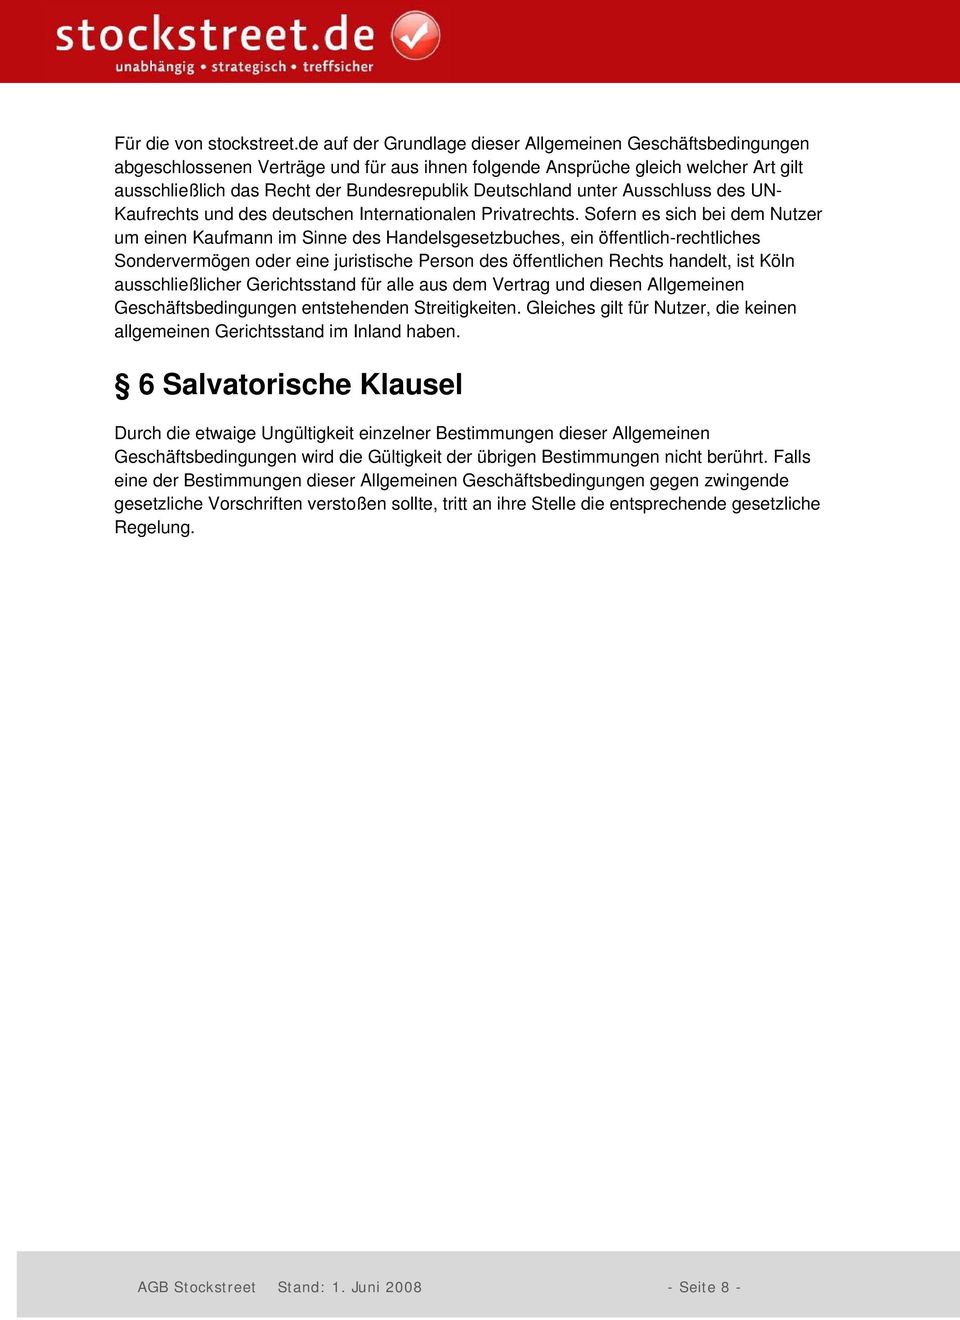 Deutschland unter Ausschluss des UN- Kaufrechts und des deutschen Internationalen Privatrechts.